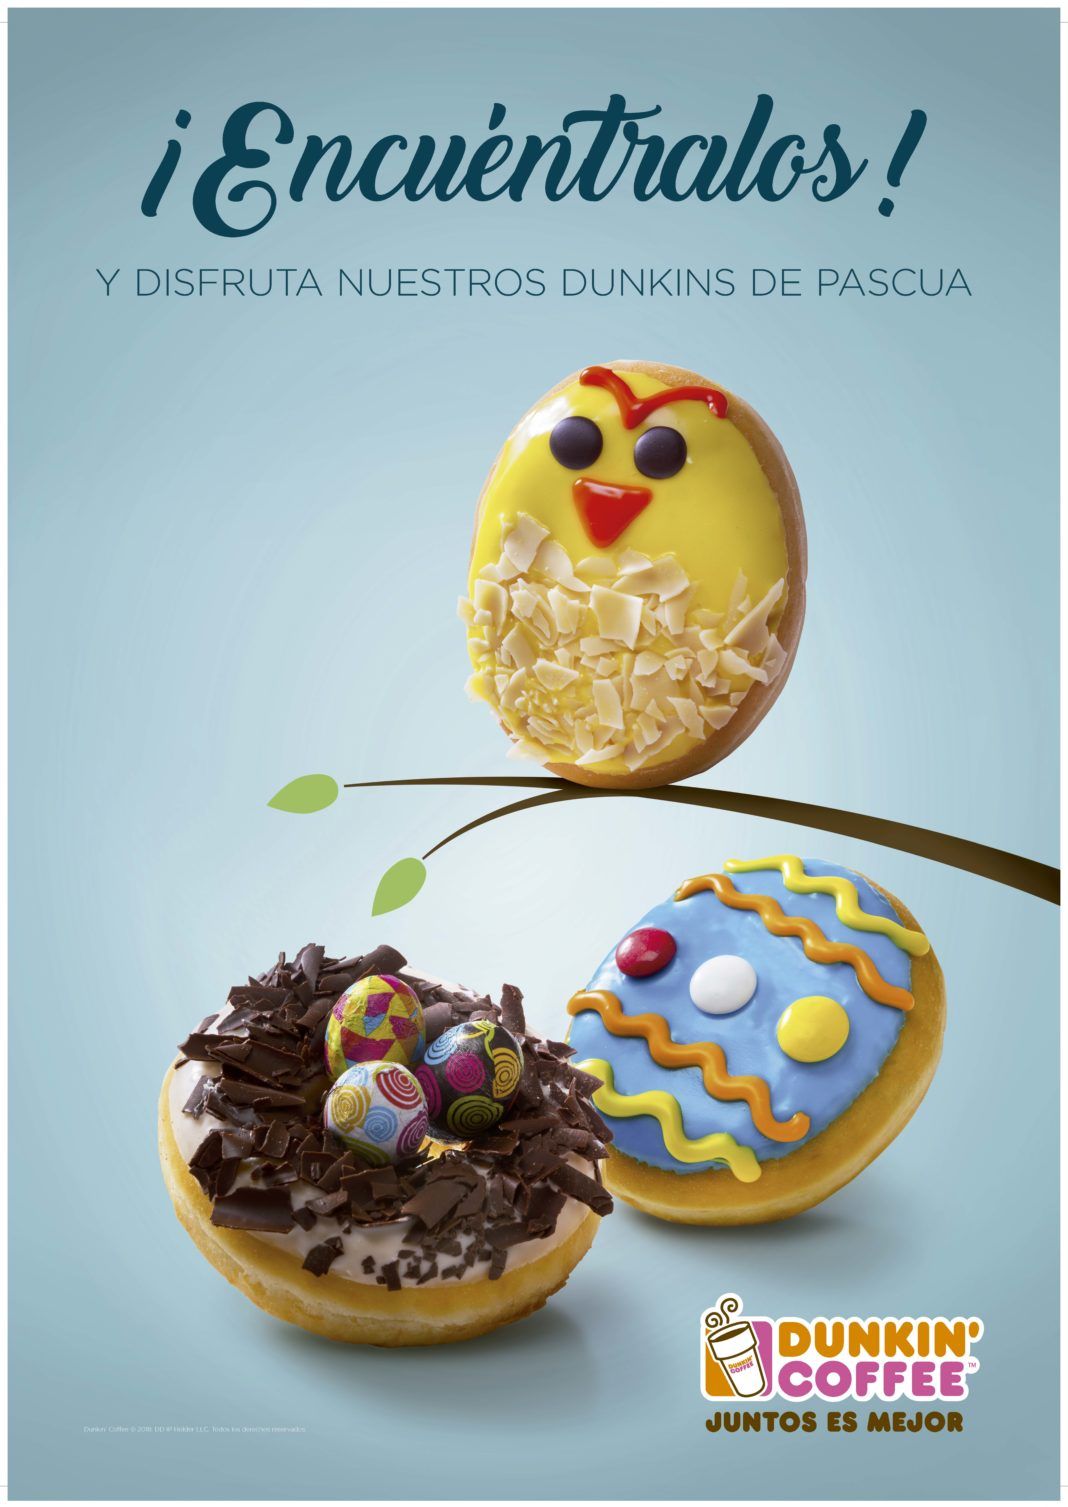 Dunkin’ Coffee presenta su nueva colección especial de Pascua